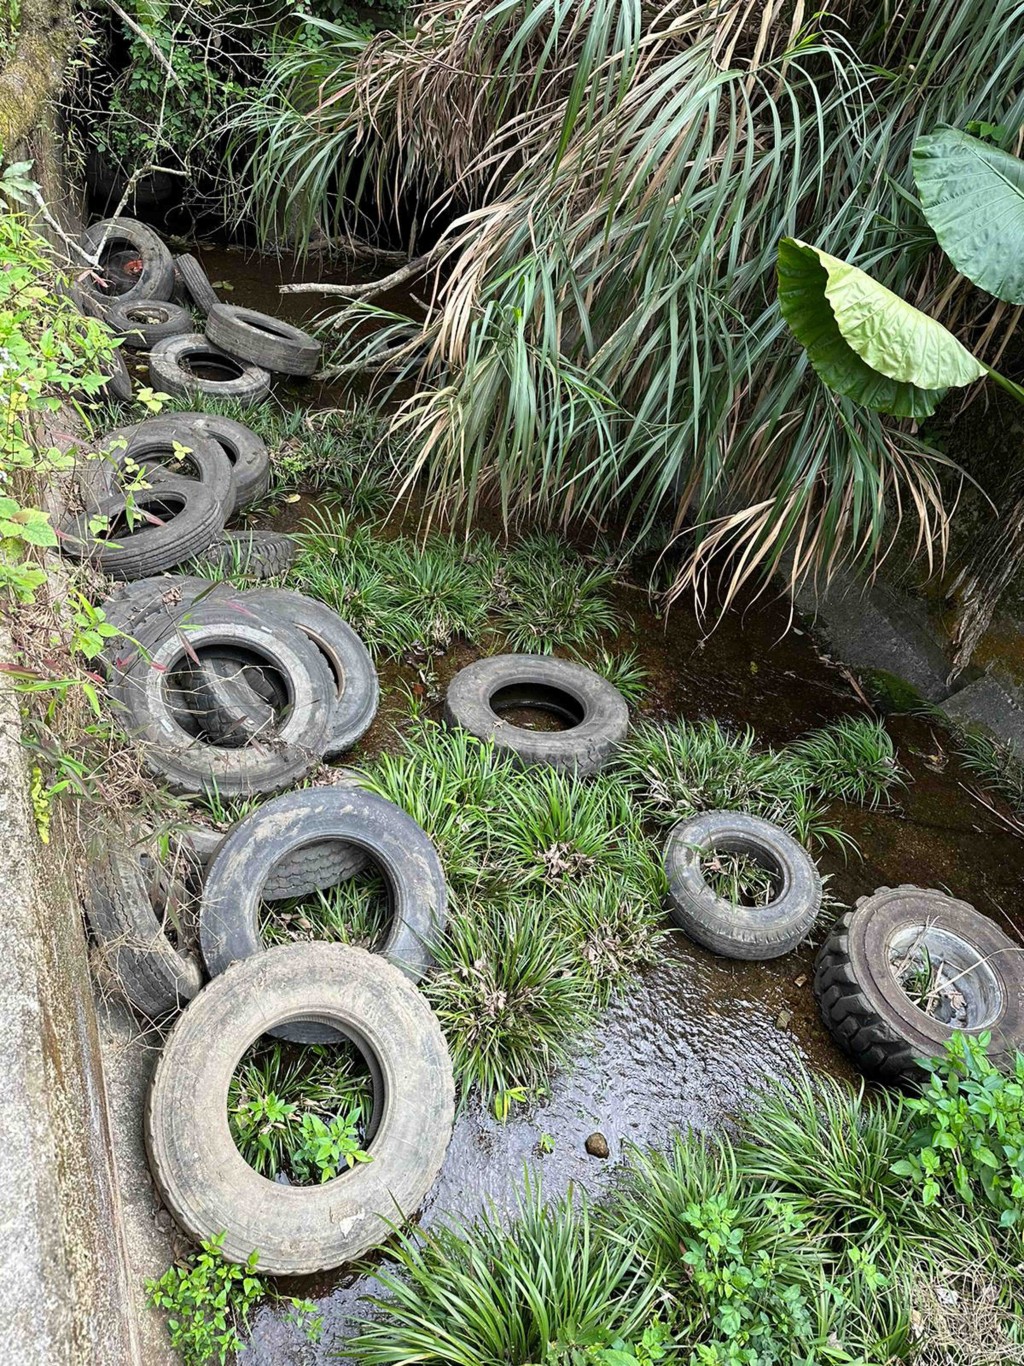 有人將大批廢棄車胎扔入大埔林村河上游，現場猶如「車胎墳場」。 李建人攝